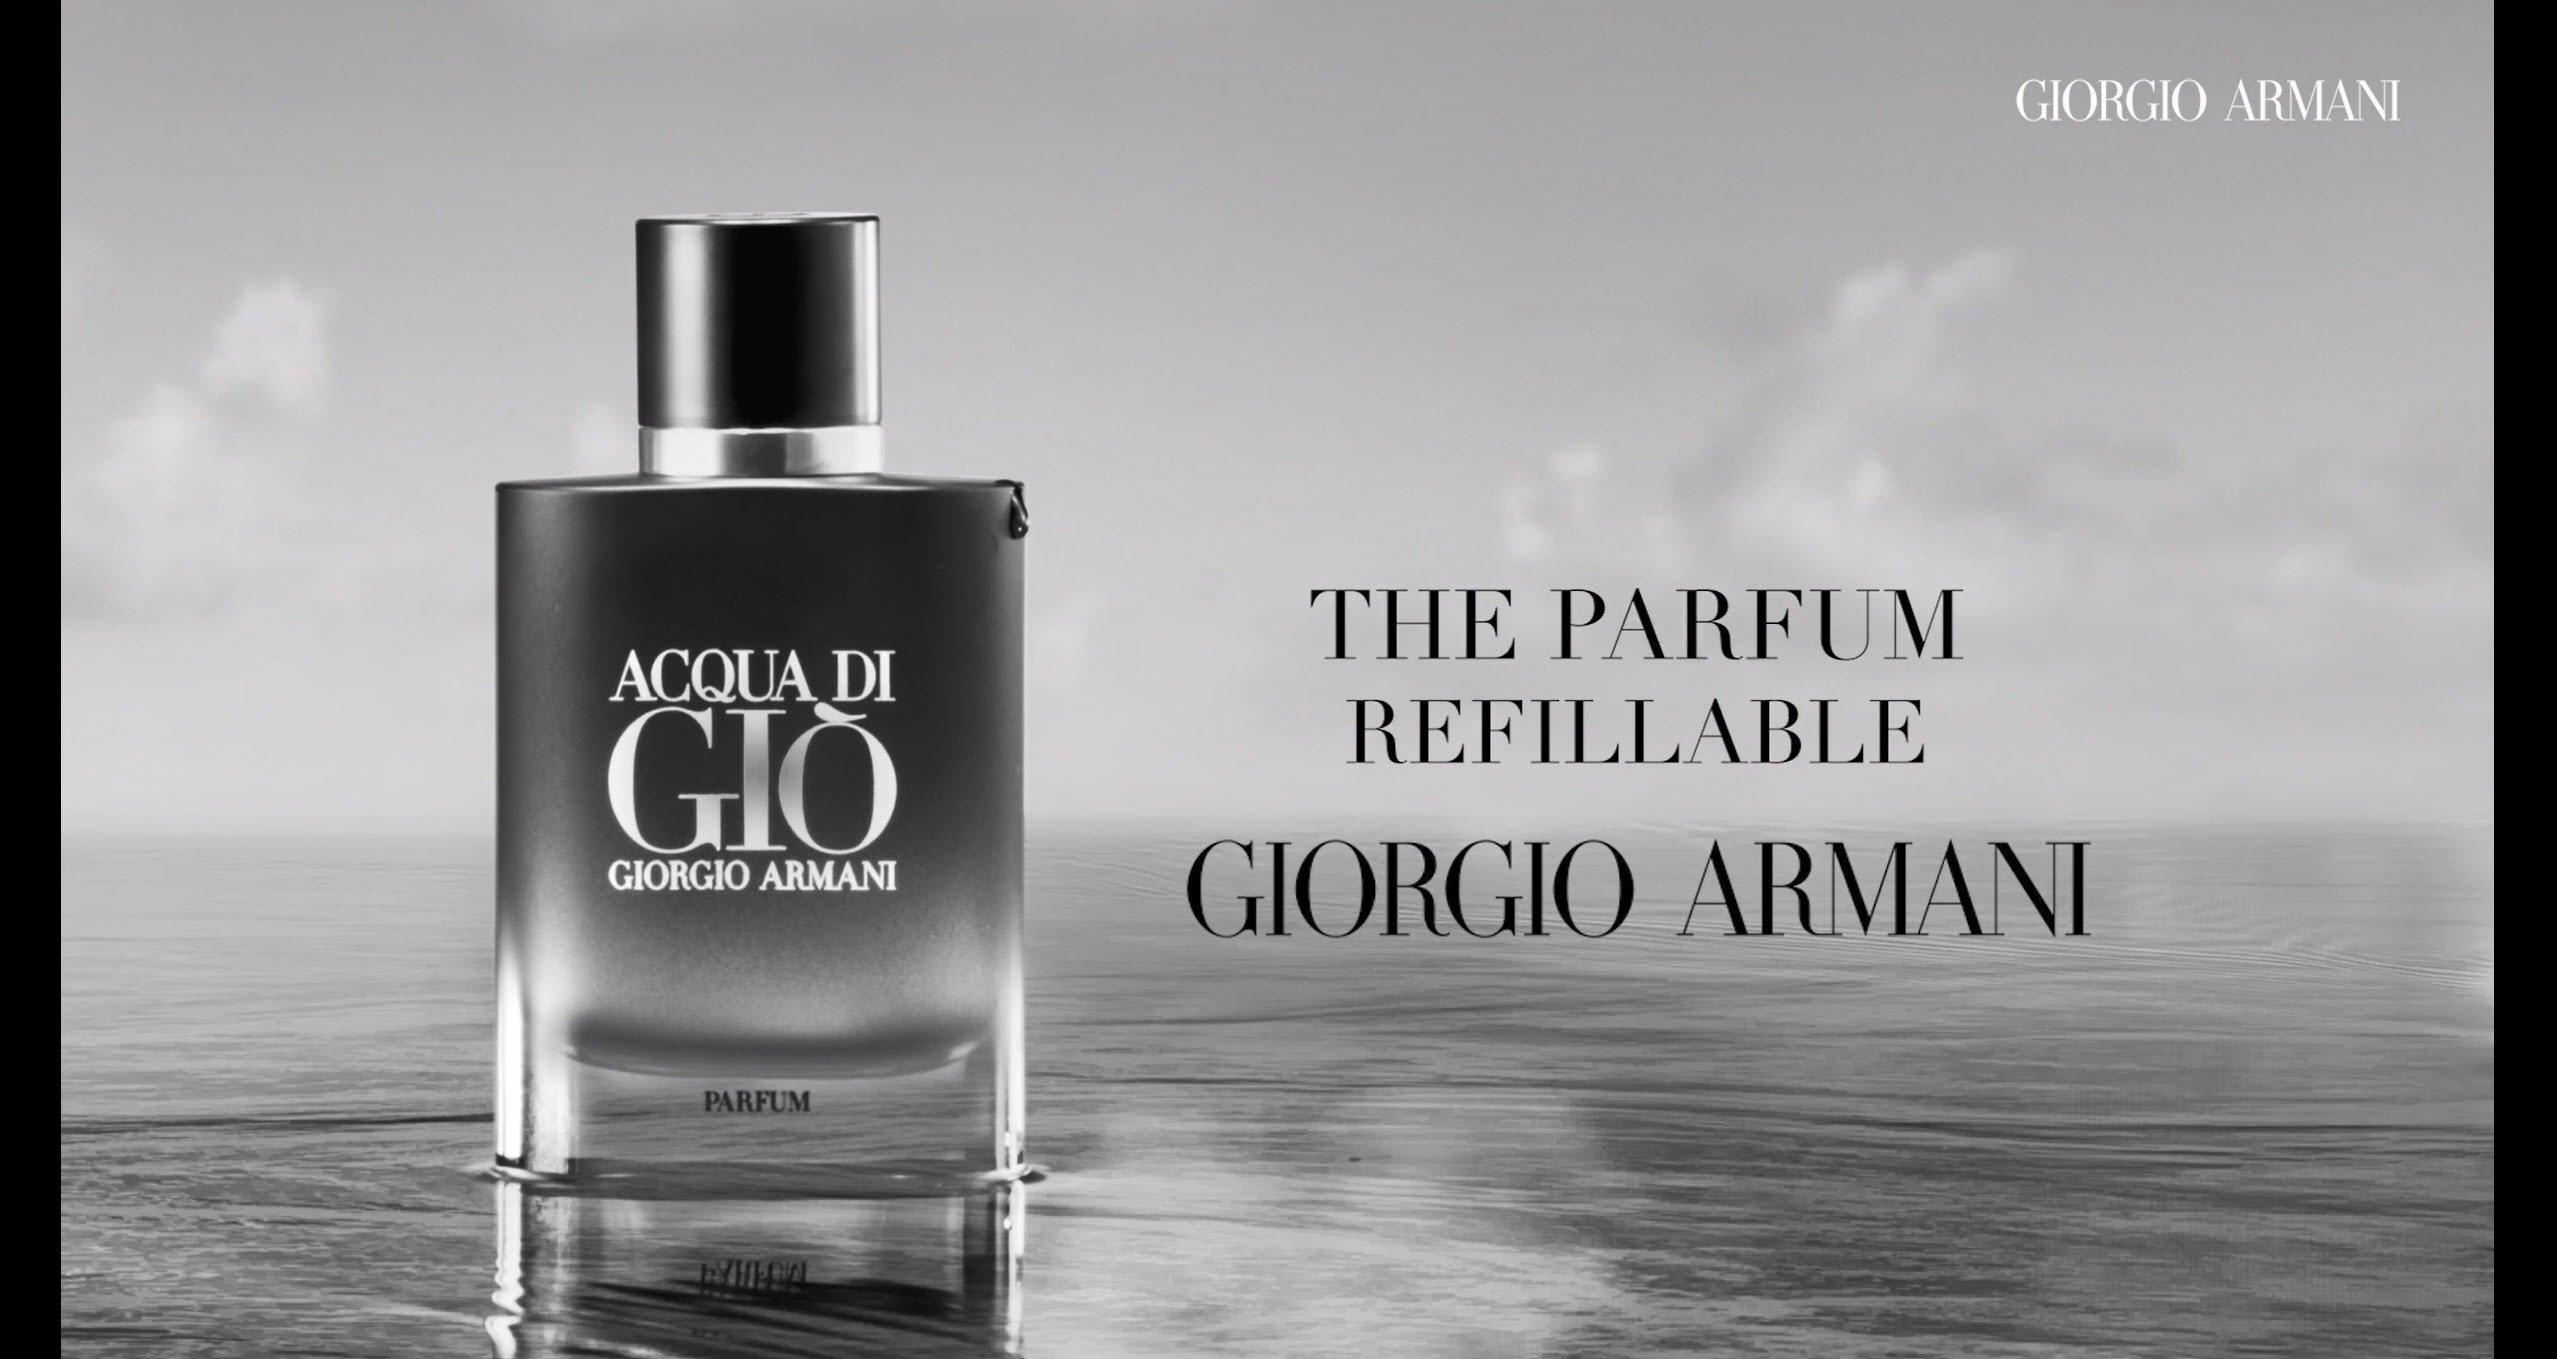 Perfume Hombre Giorgio Armani - Acqua di Gio (100ml)